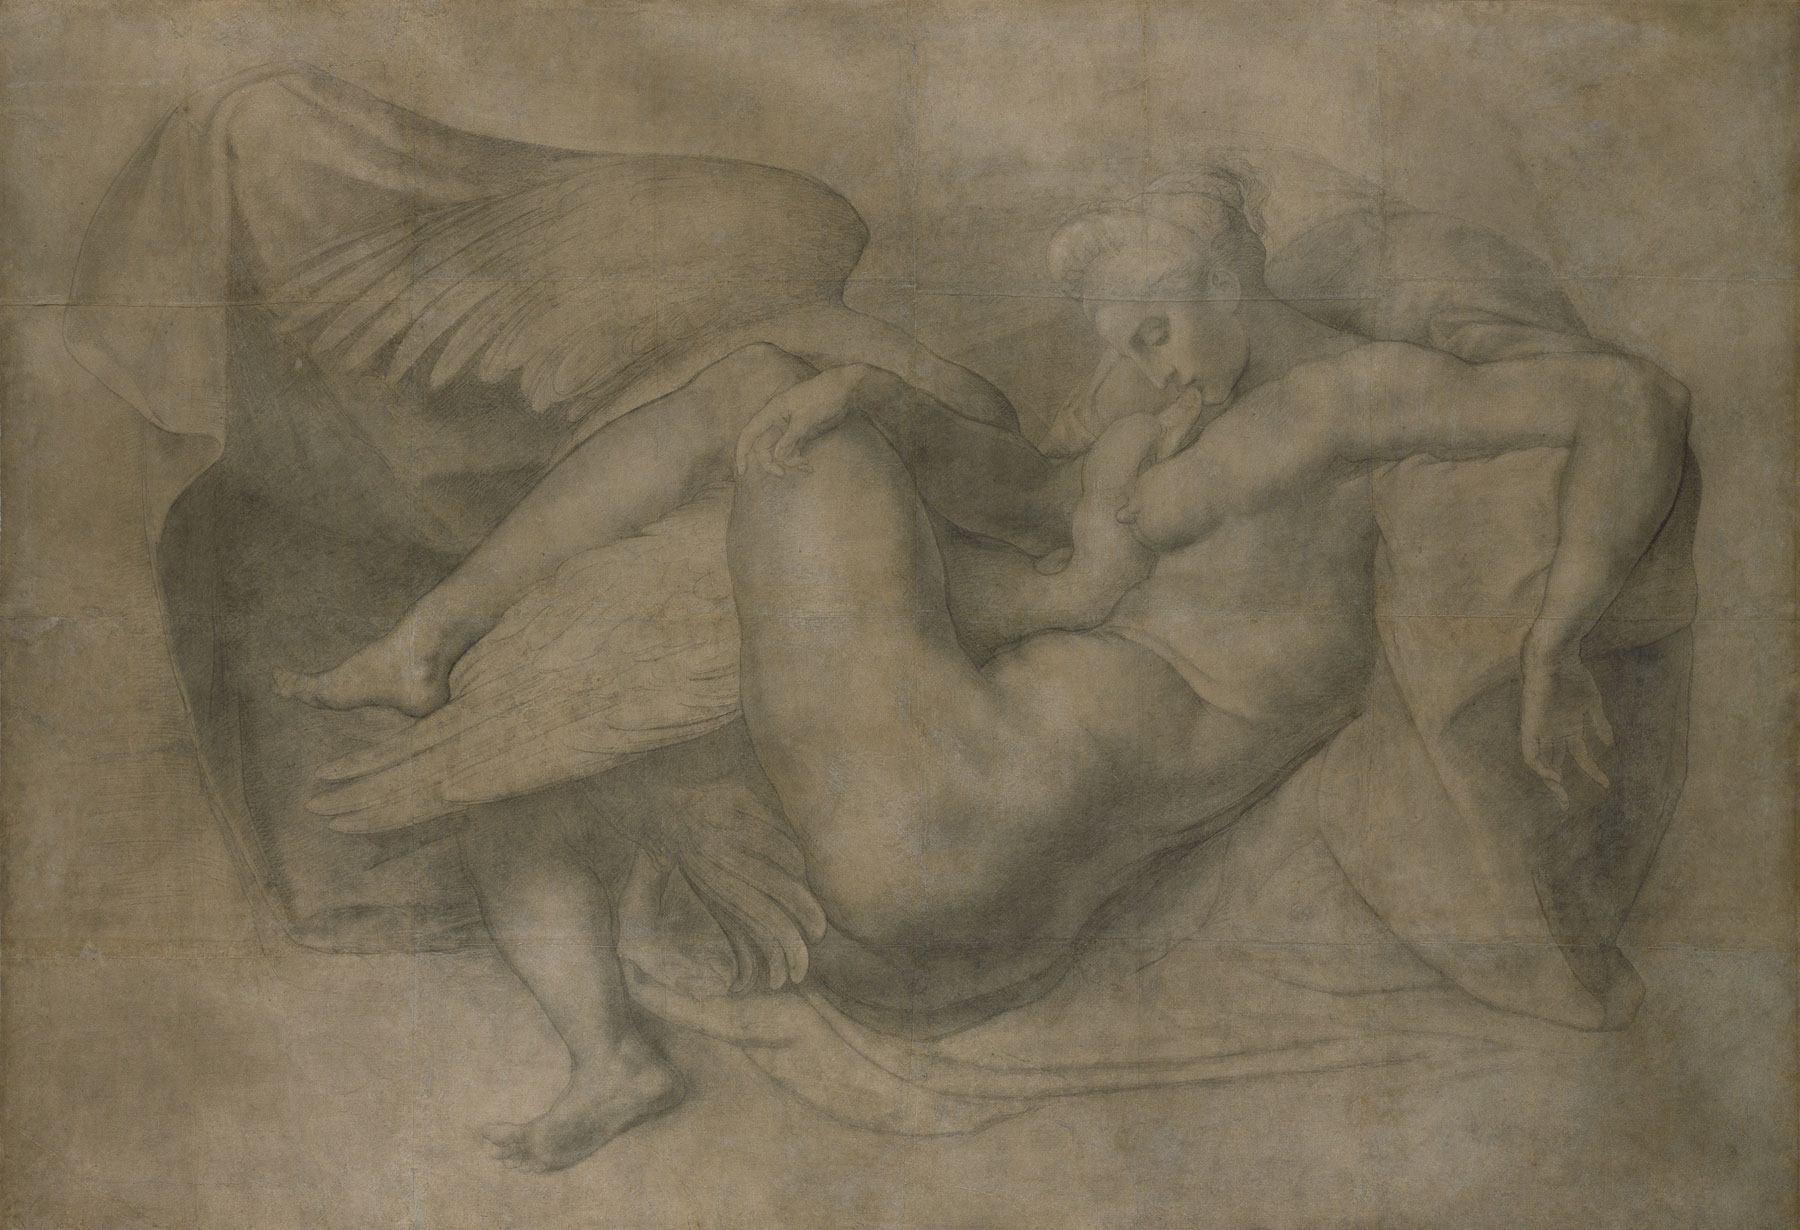 Attribuito a Rosso Fiorentino (da Michelangelo Buonarroti), Leda e il cigno, (1530-1540?; disegno a carboncino, 1745 × 2538 mm; Londra, Royal Academy of Arts)
